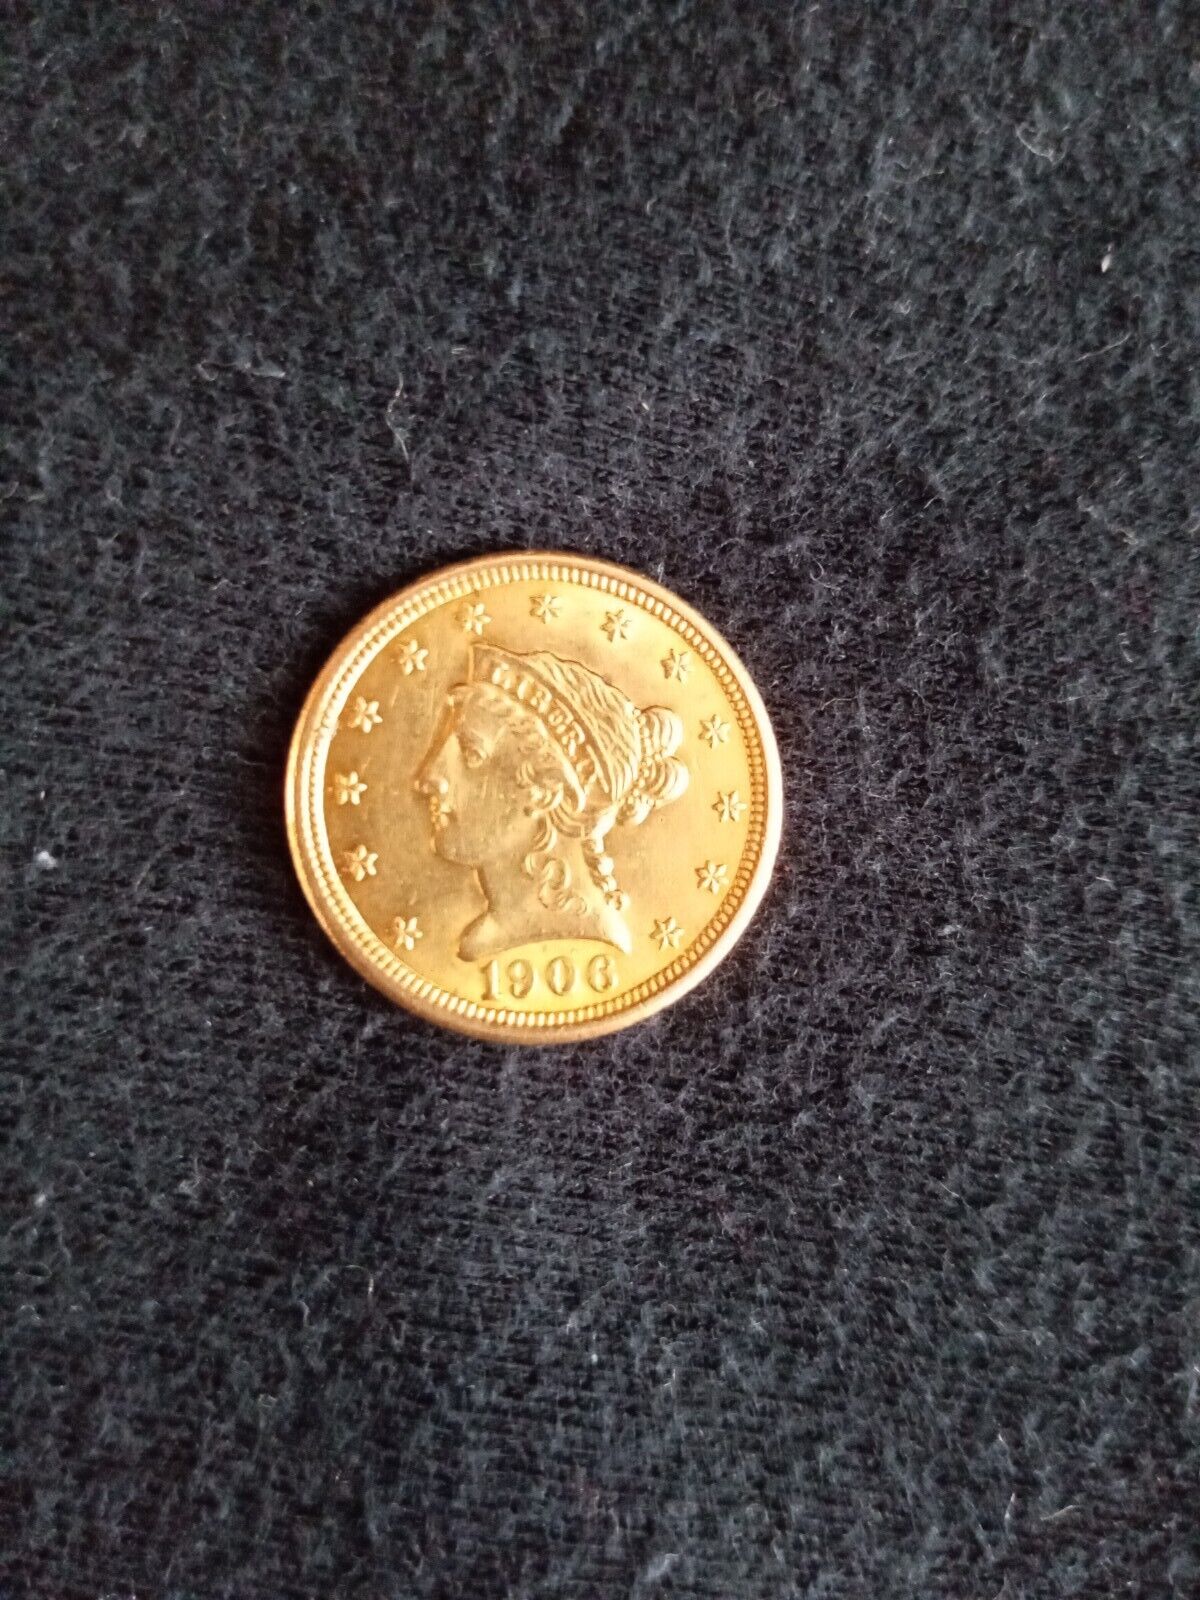 1906 G$2 1/2 ... $2.5 Liberty Head Quarter Eagle. Agw: 0.1209oz